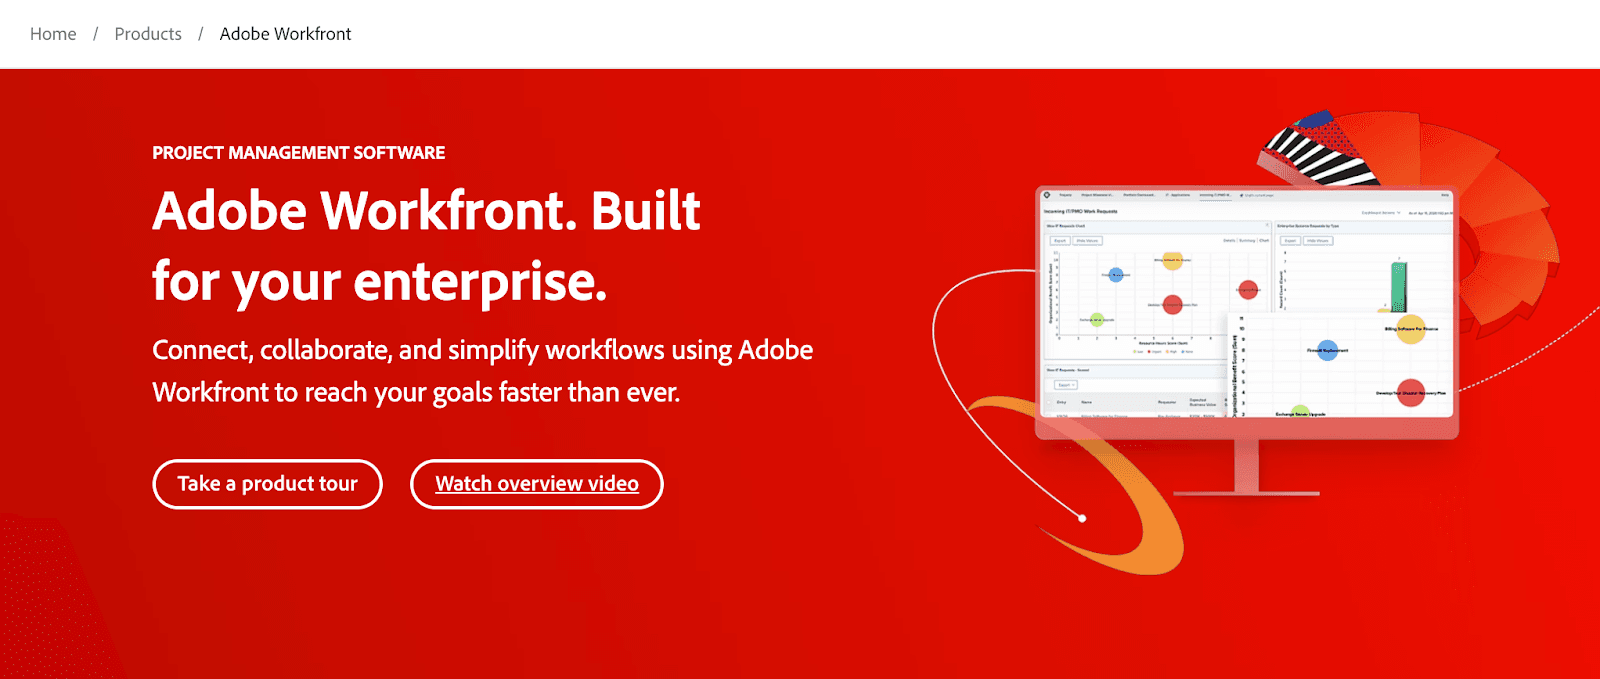 Adobe Workfront for enterprise businesses 